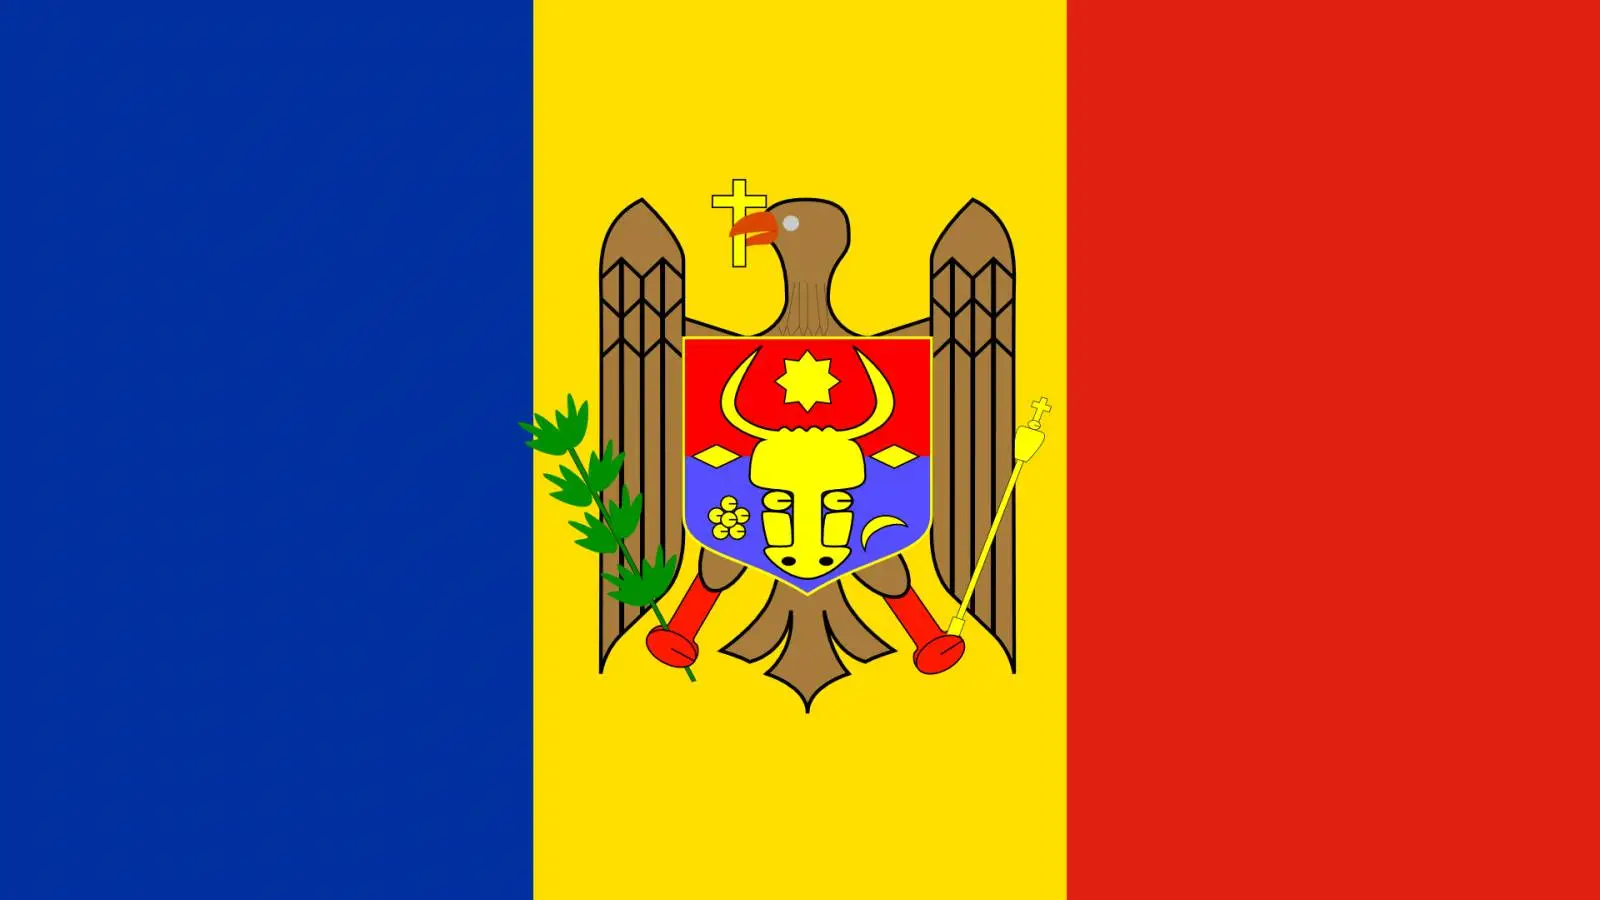 Moldovan puolustusministeri sanoo, että Venäjä ei halua hyökätä maahan